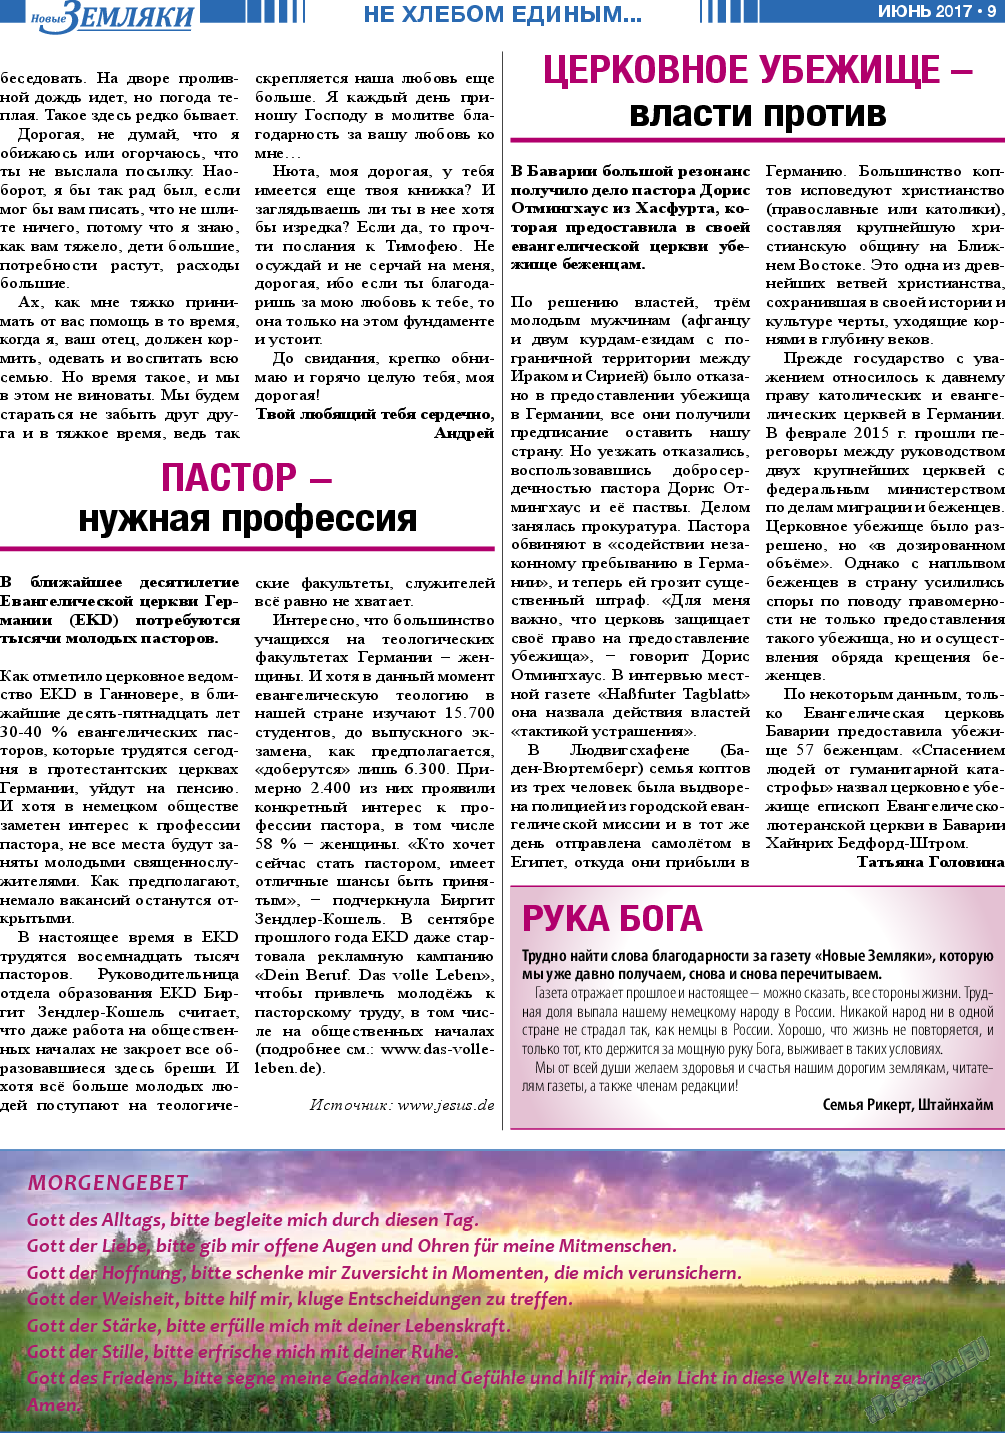 Новые Земляки, газета. 2017 №6 стр.9